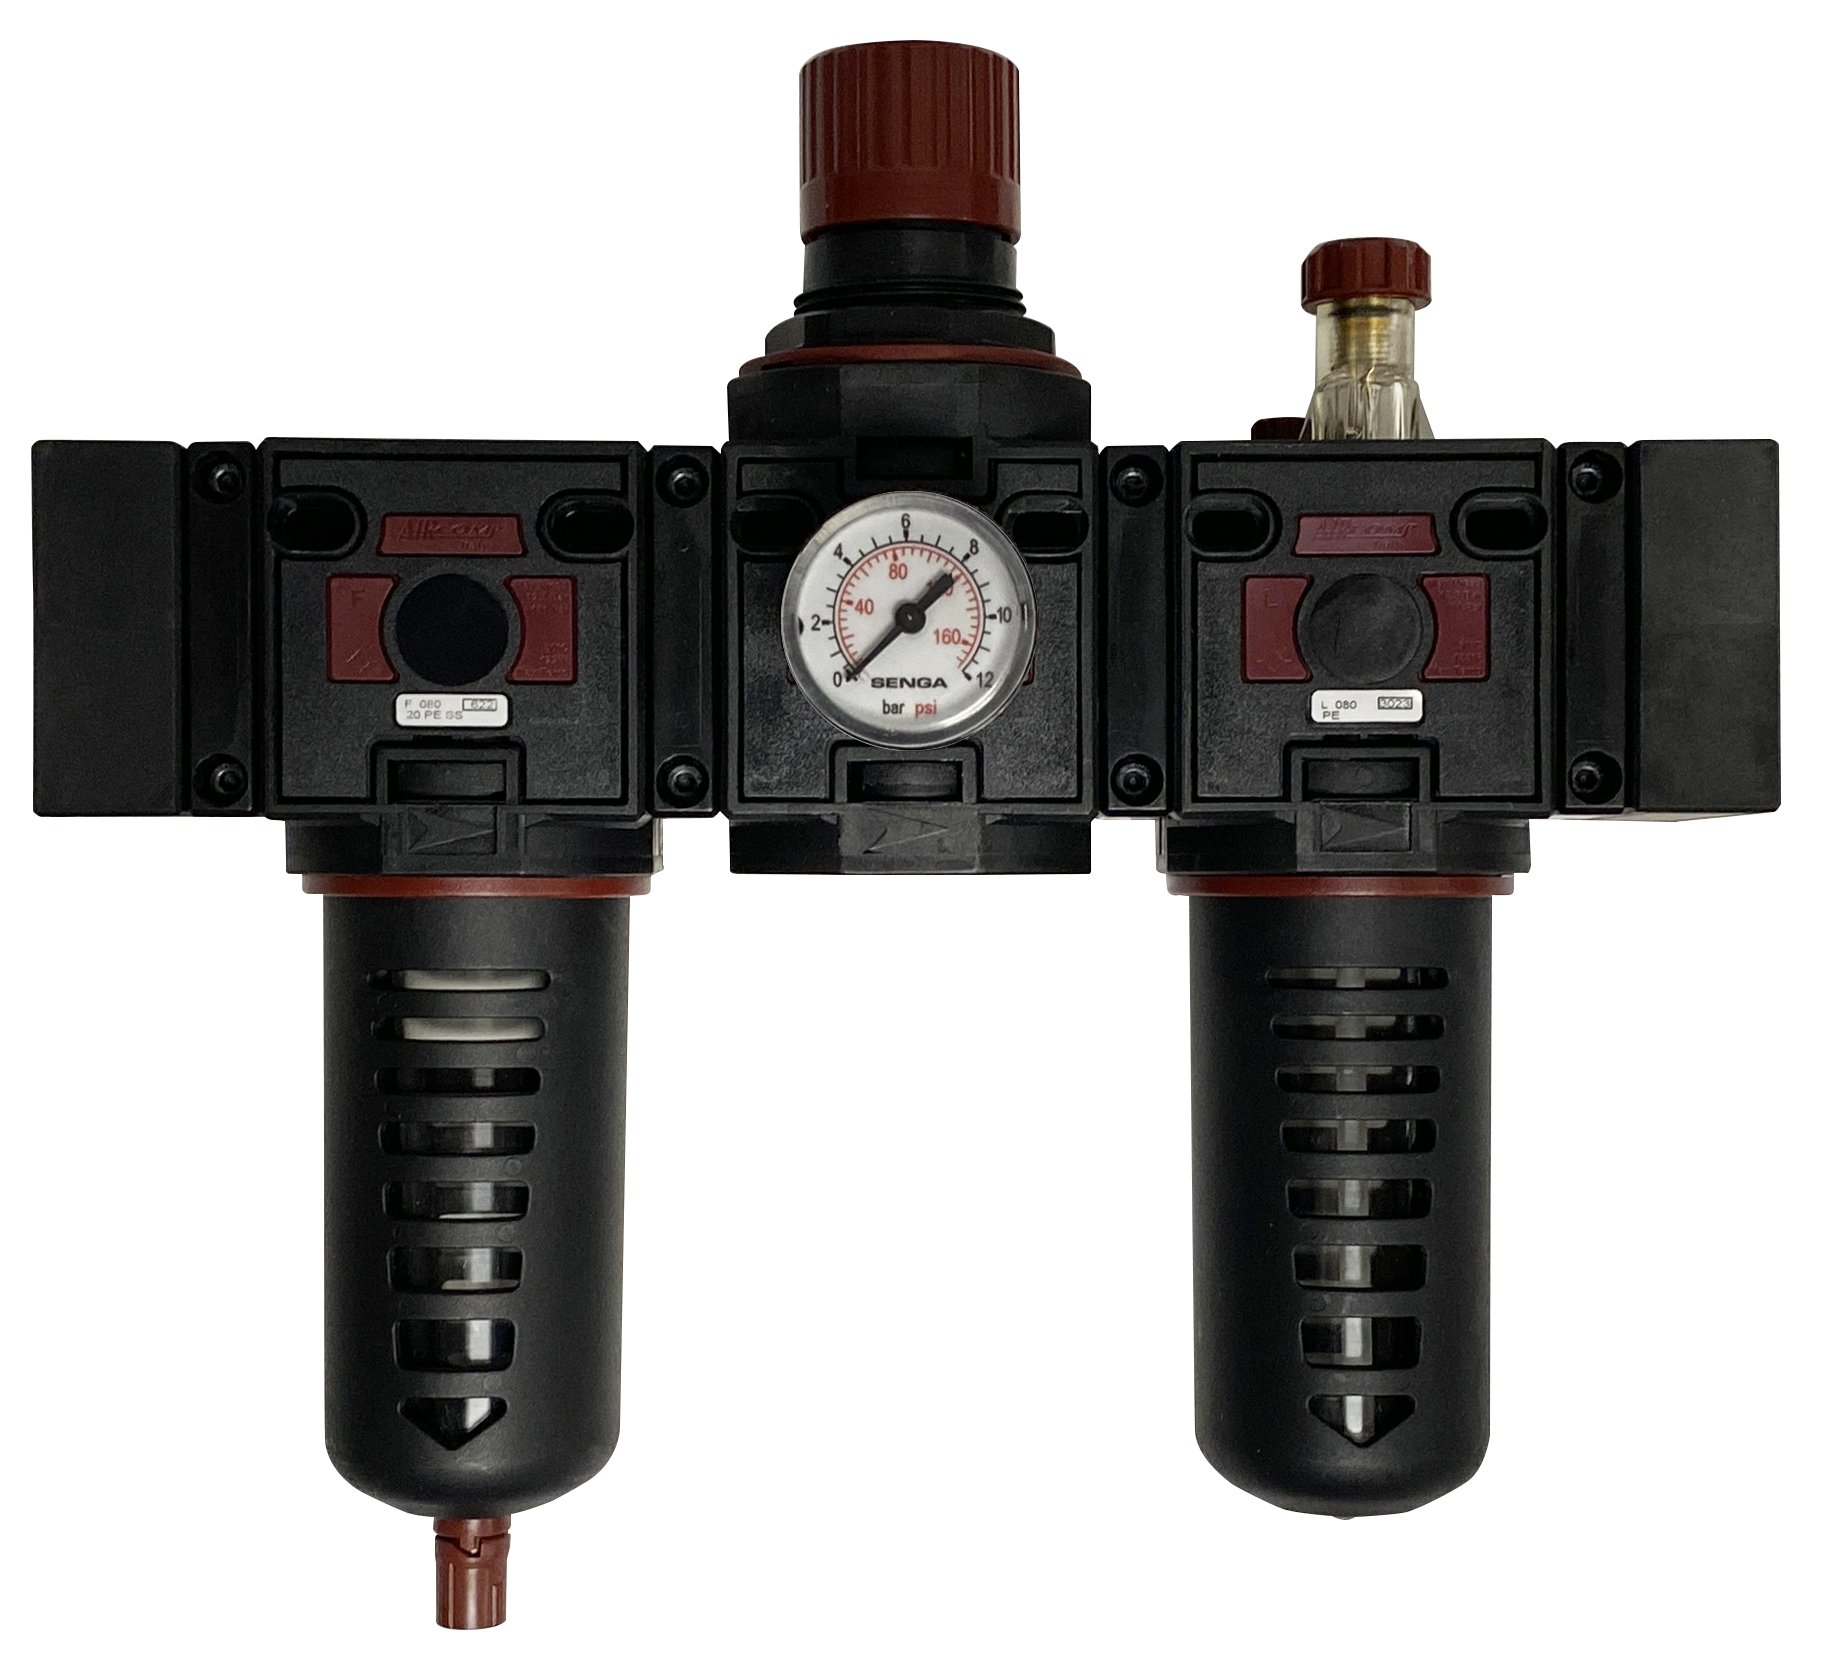 Filtre+Régulateur+Lubrificateur avec manomètre 0-8 bar G3/4'' pour air comprimé Composants pneumatiques